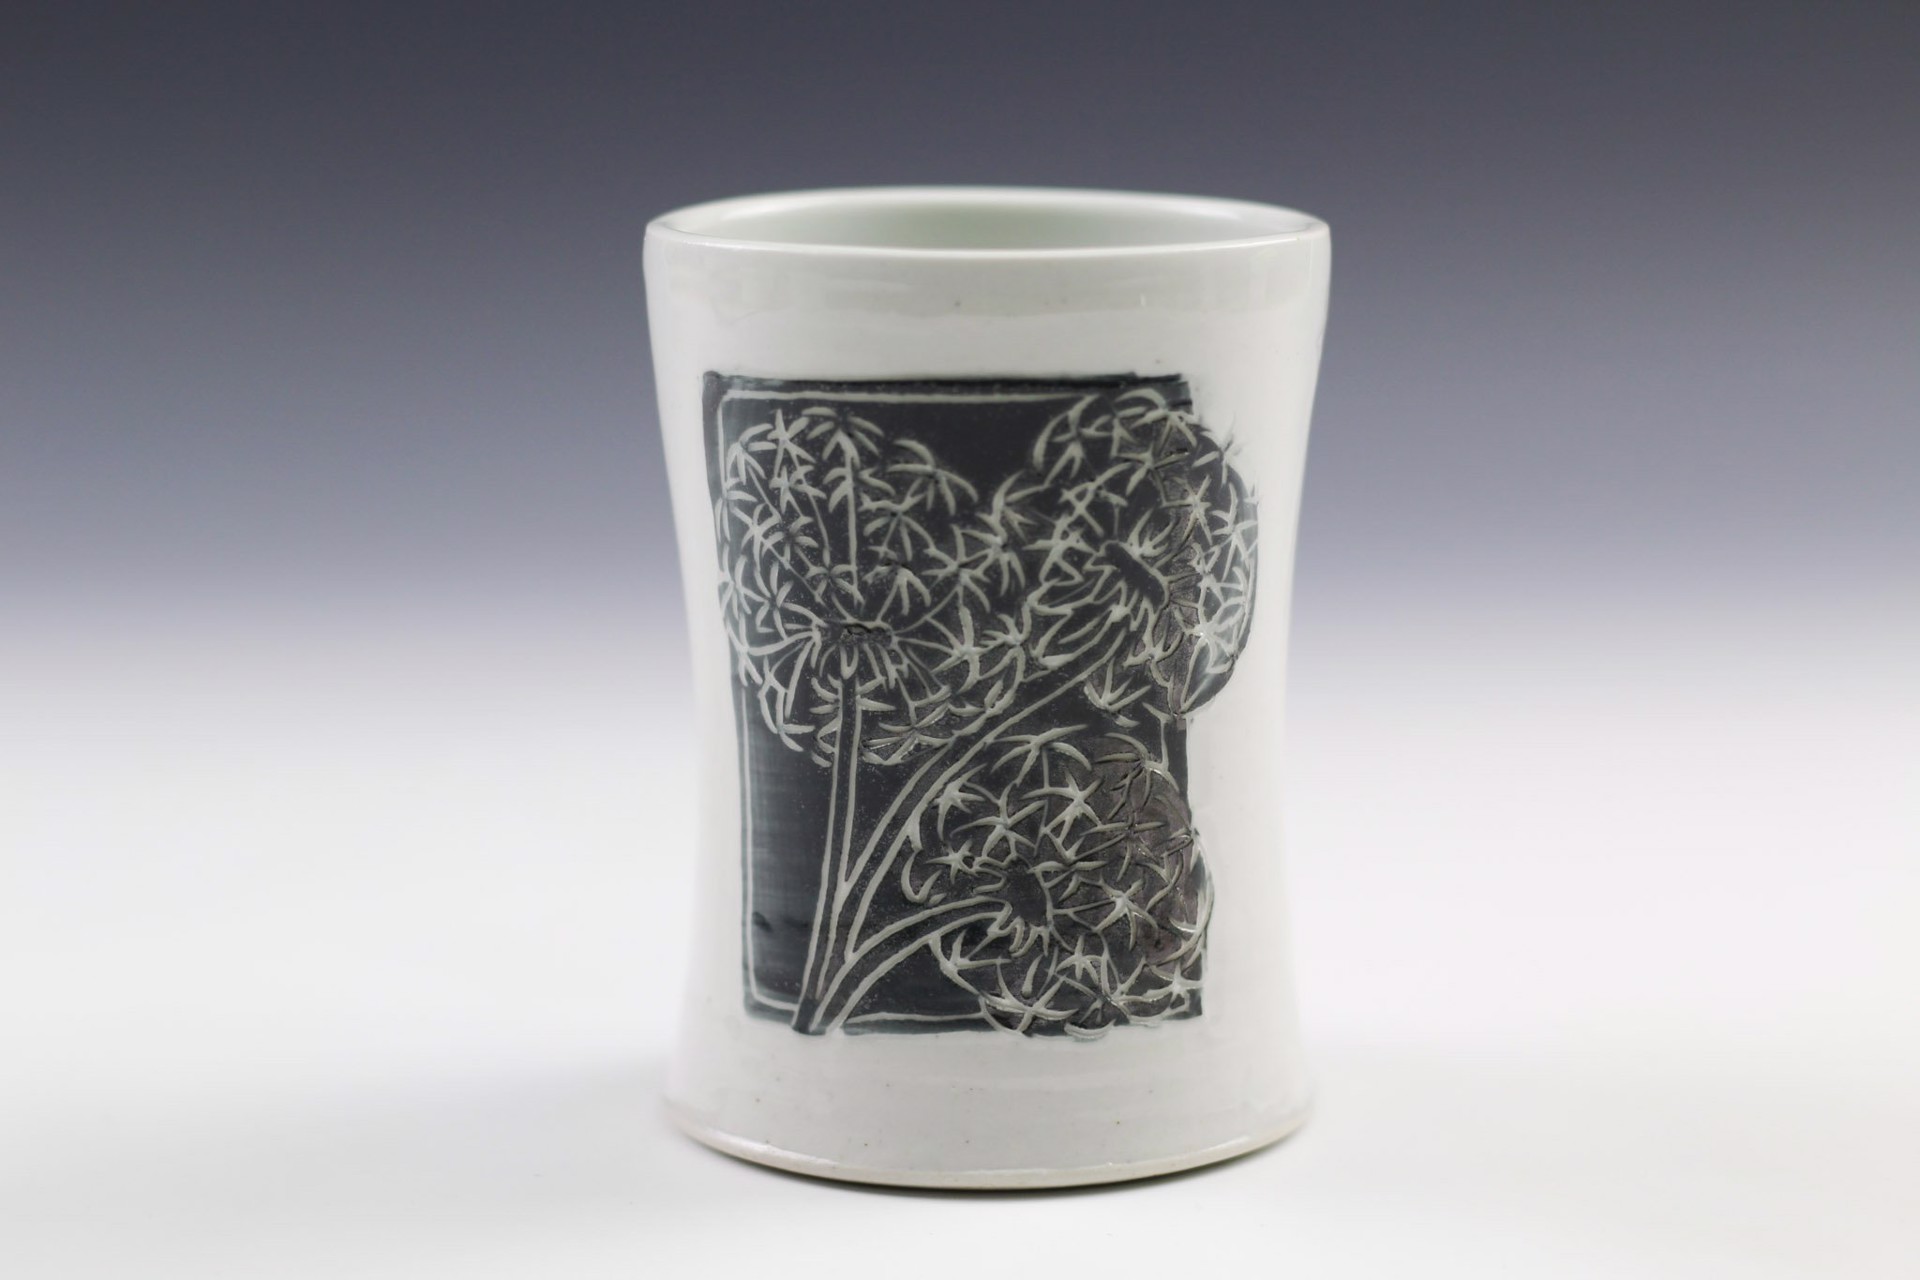 Dandelion Mug by Glynnis Lessing